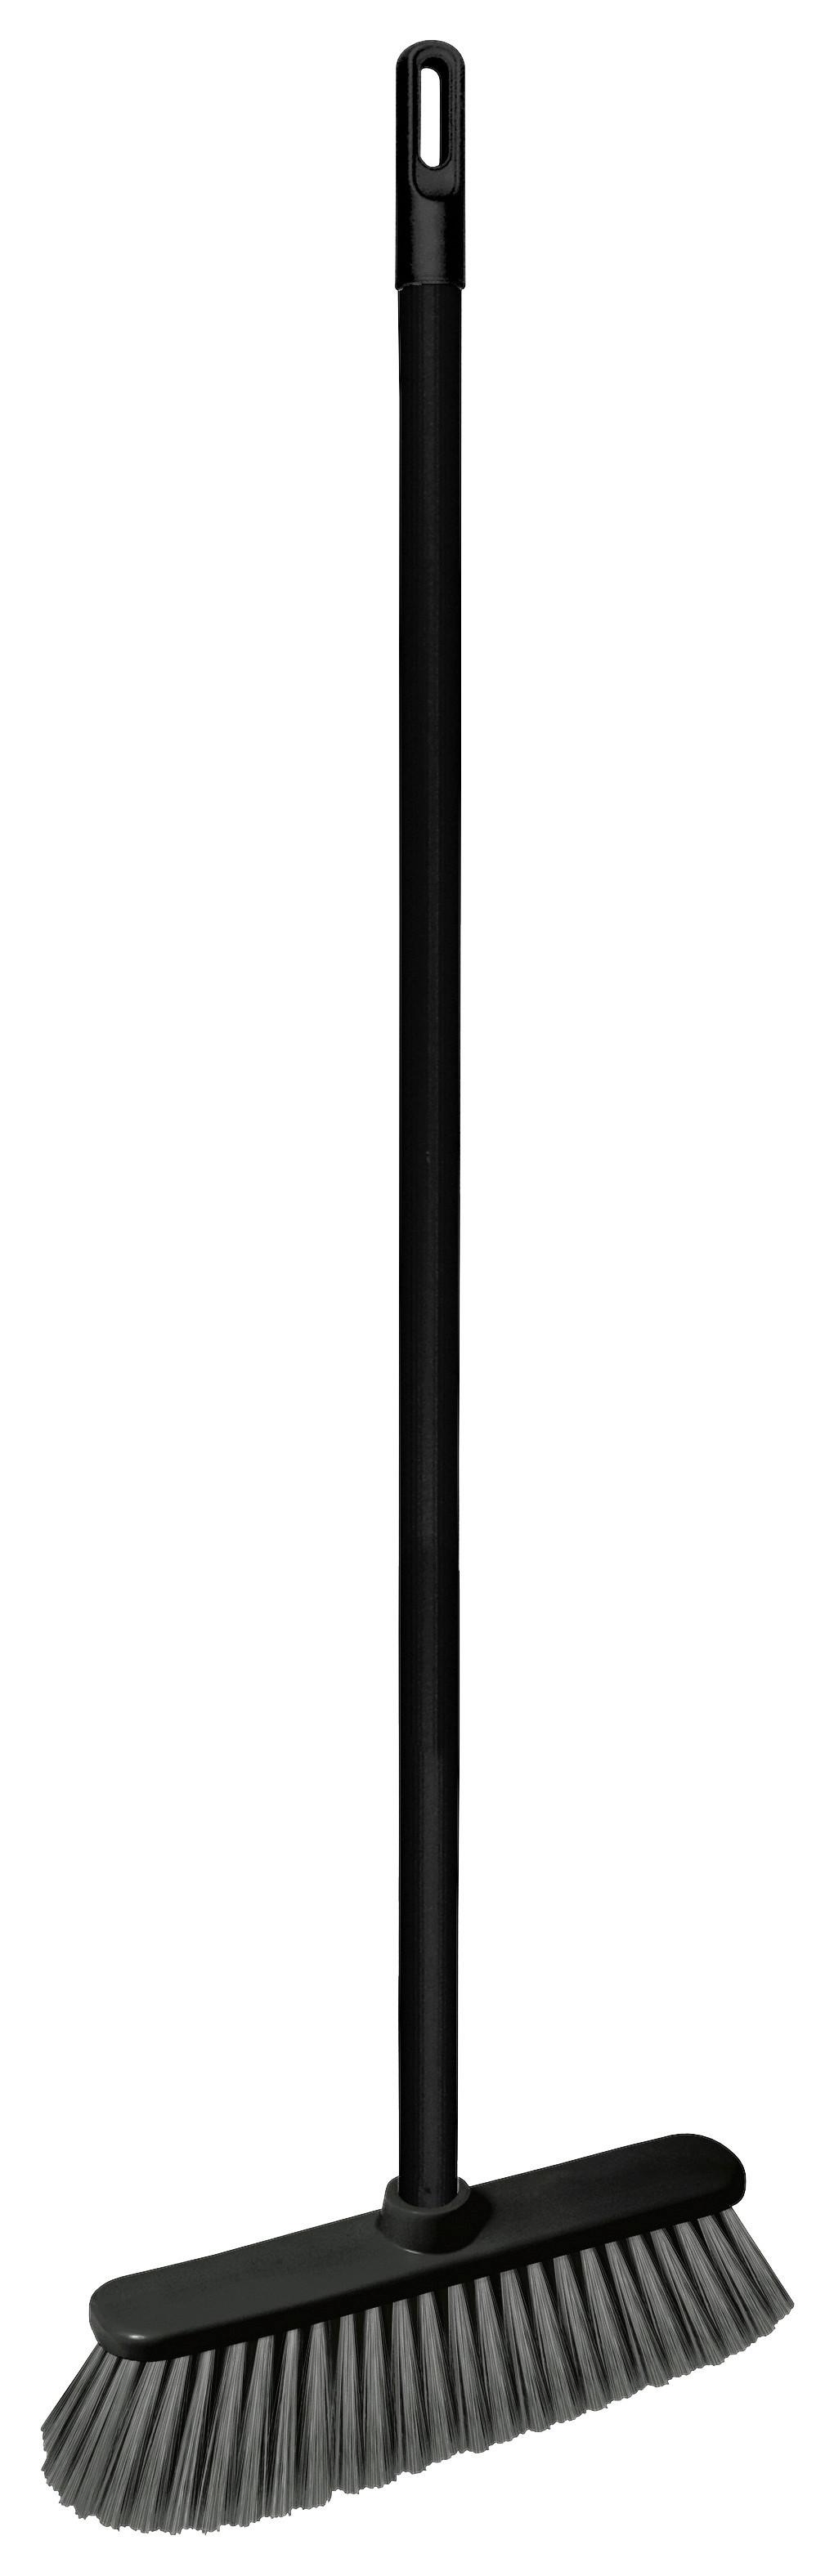 Koště Olaf - šedá/černá, Konvenční, kov/plast (32/9/127cm) - Modern Living